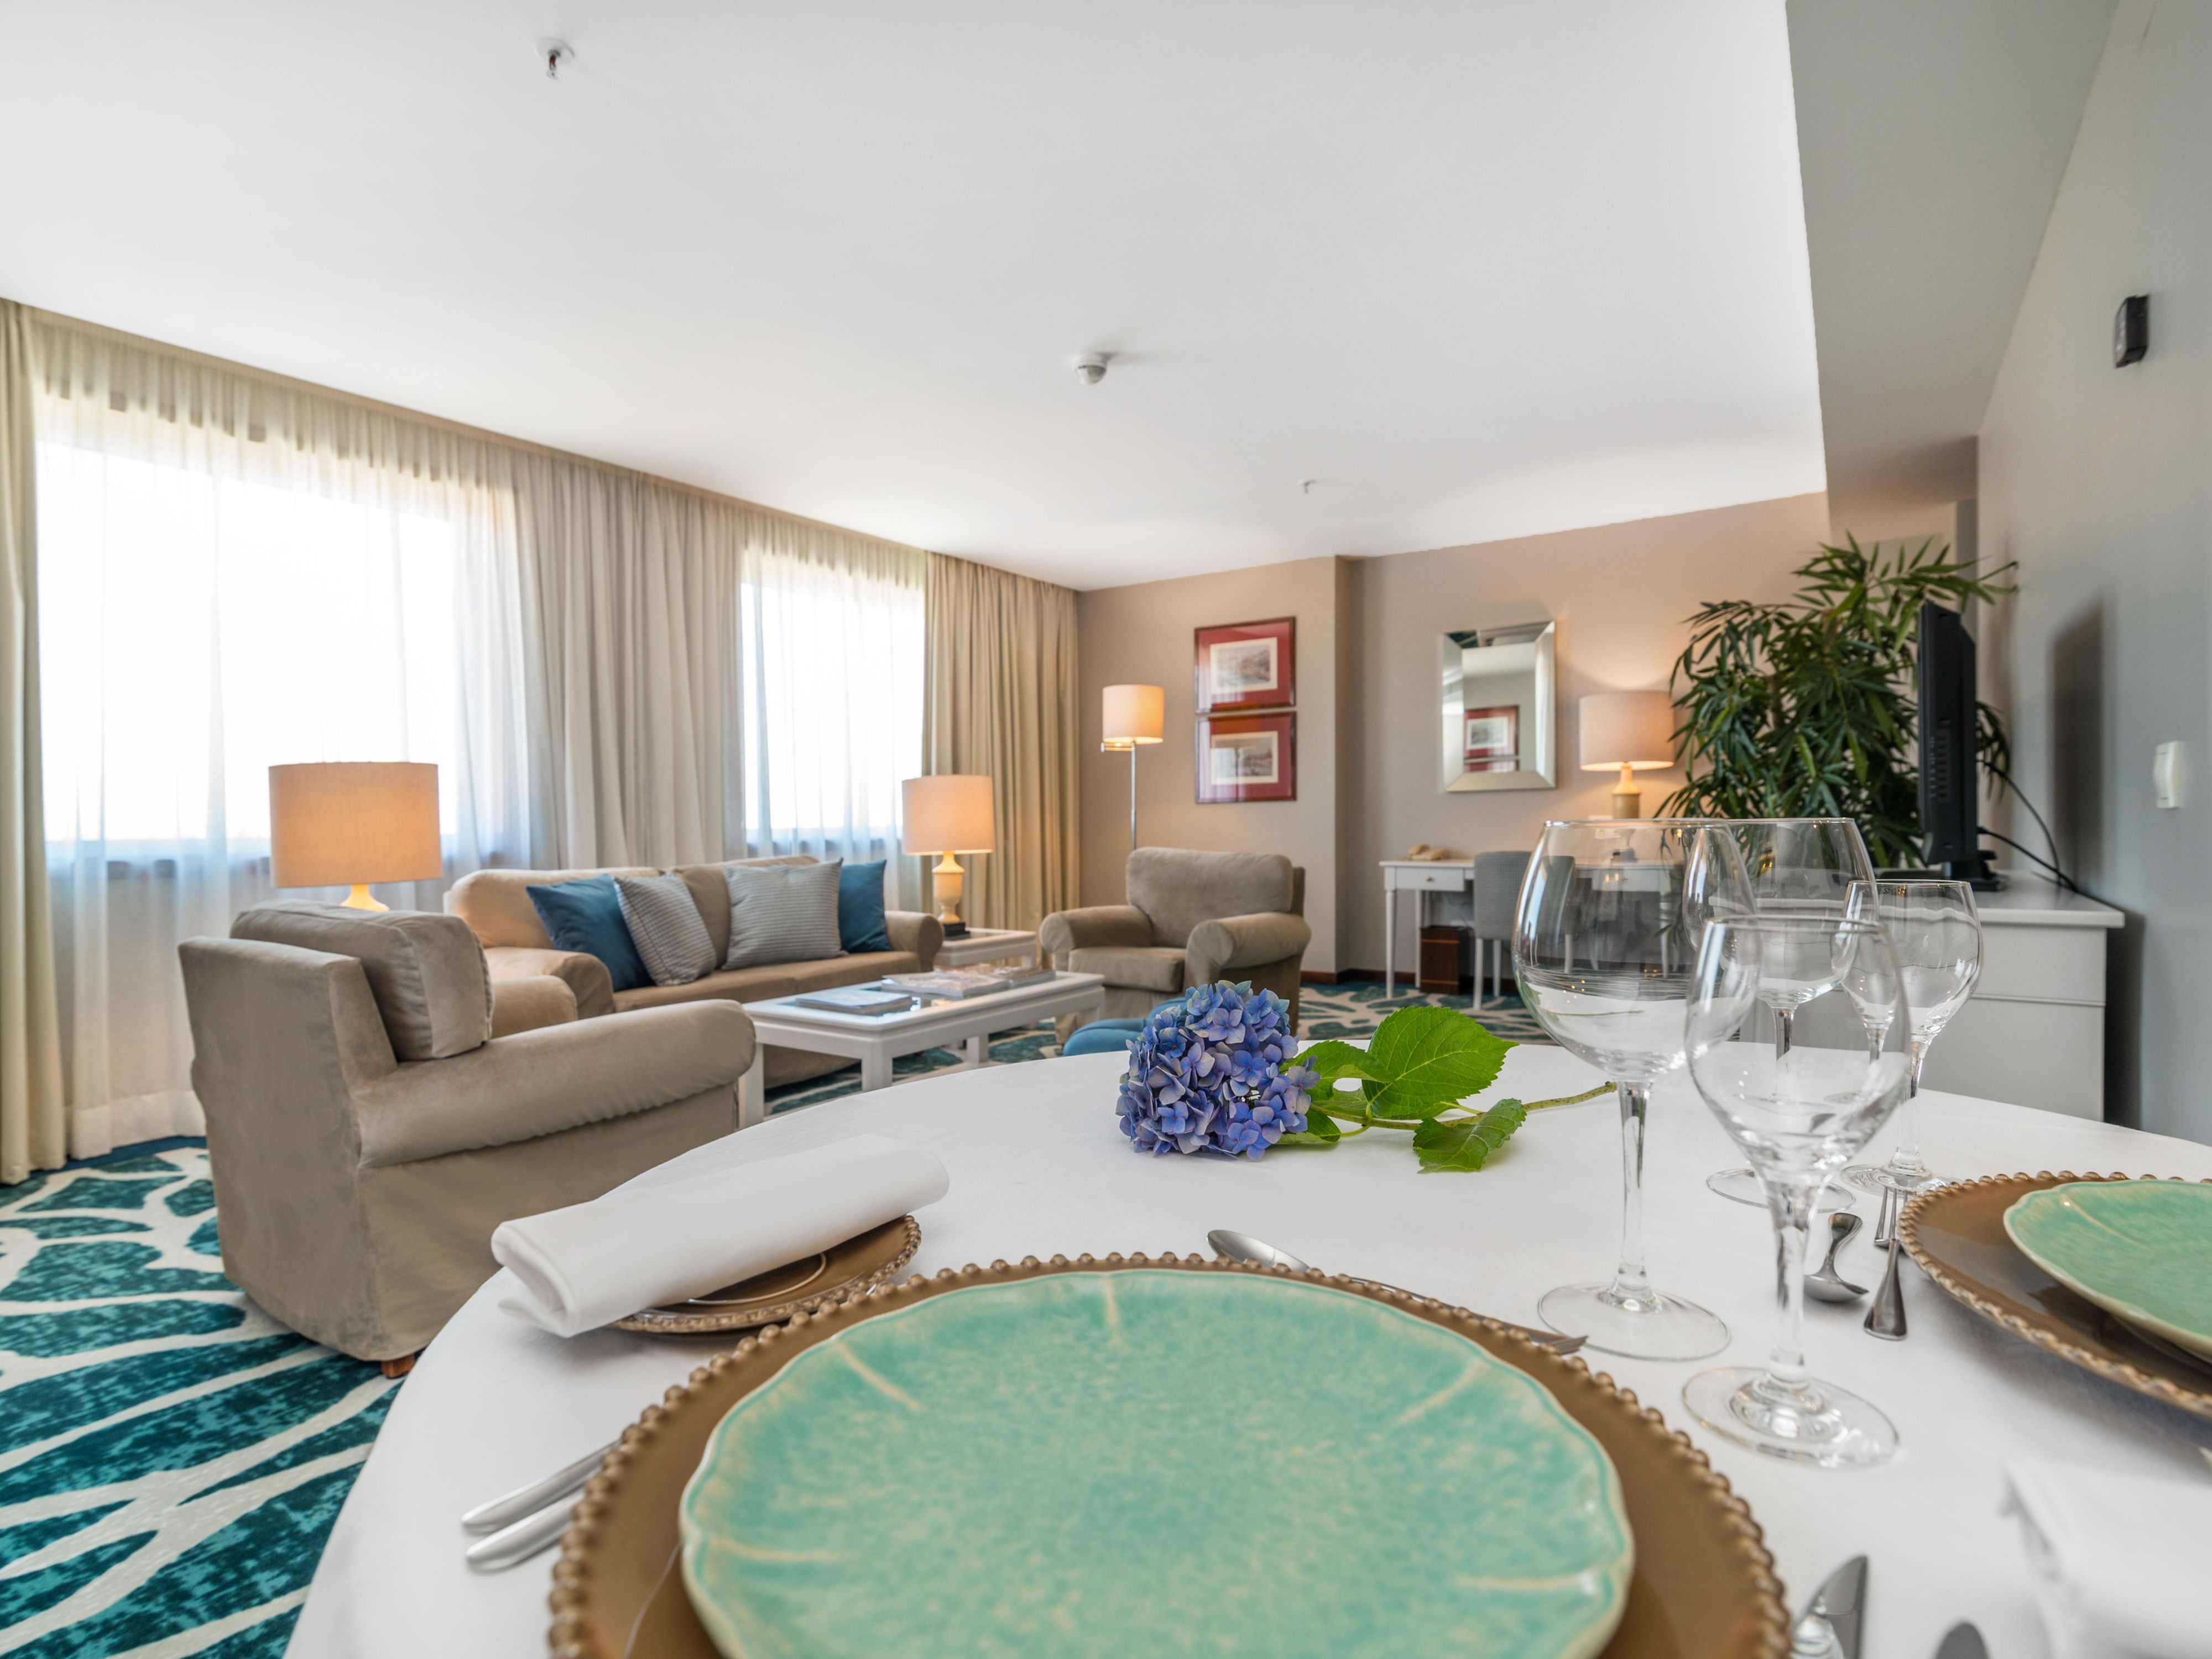 Tenemos la habitación perfecta para explorar Oporto en familia. Con 140 metros cuadrados y 2 plantas, disfrute de un merecido descanso con vistas al centro de la ciudad y al río Duero.